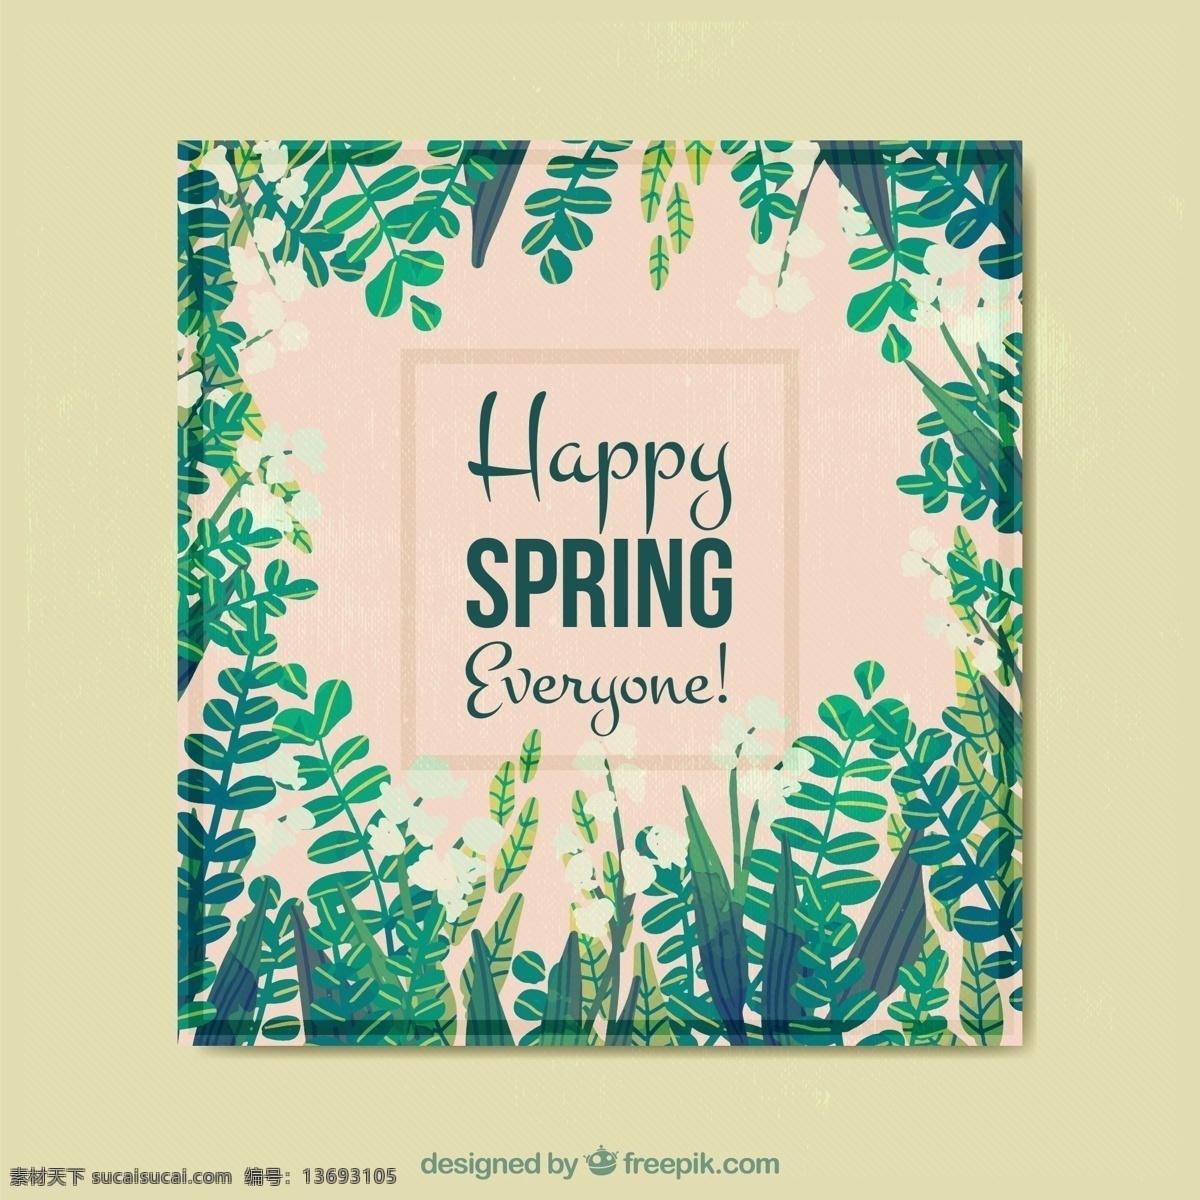 快乐 春季 绿叶 方形 卡片 矢量 花卉 植物 树叶 动漫动画 风景漫画